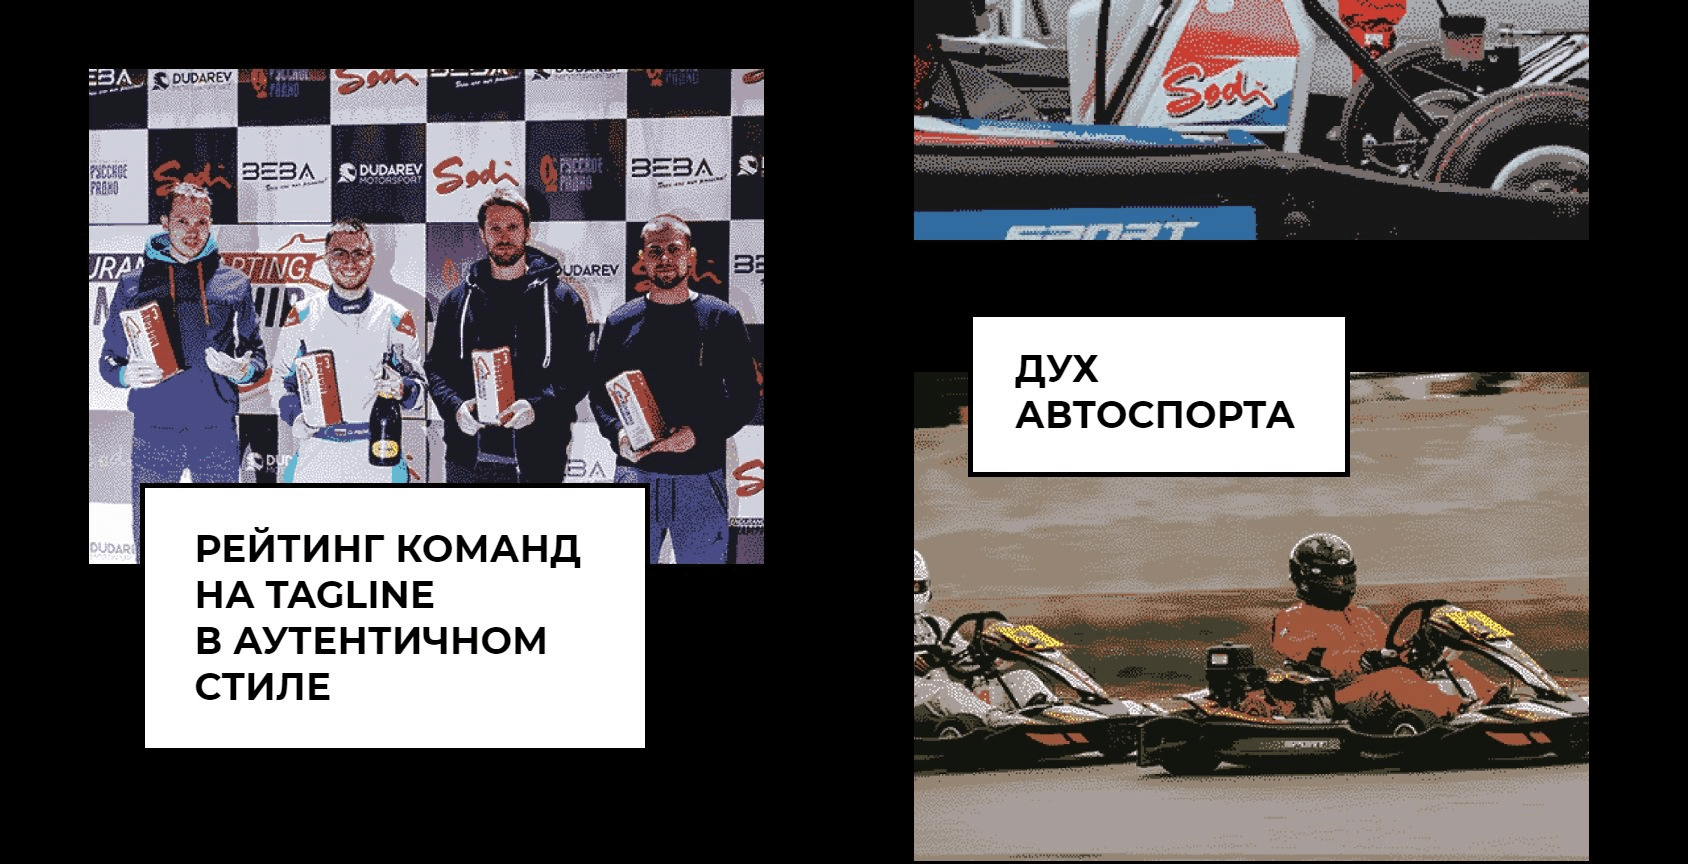 Анонсы событий и промокоды в сентябре: Big Data&AI Conference 2019, Digital Race, MIXX Russia Awards